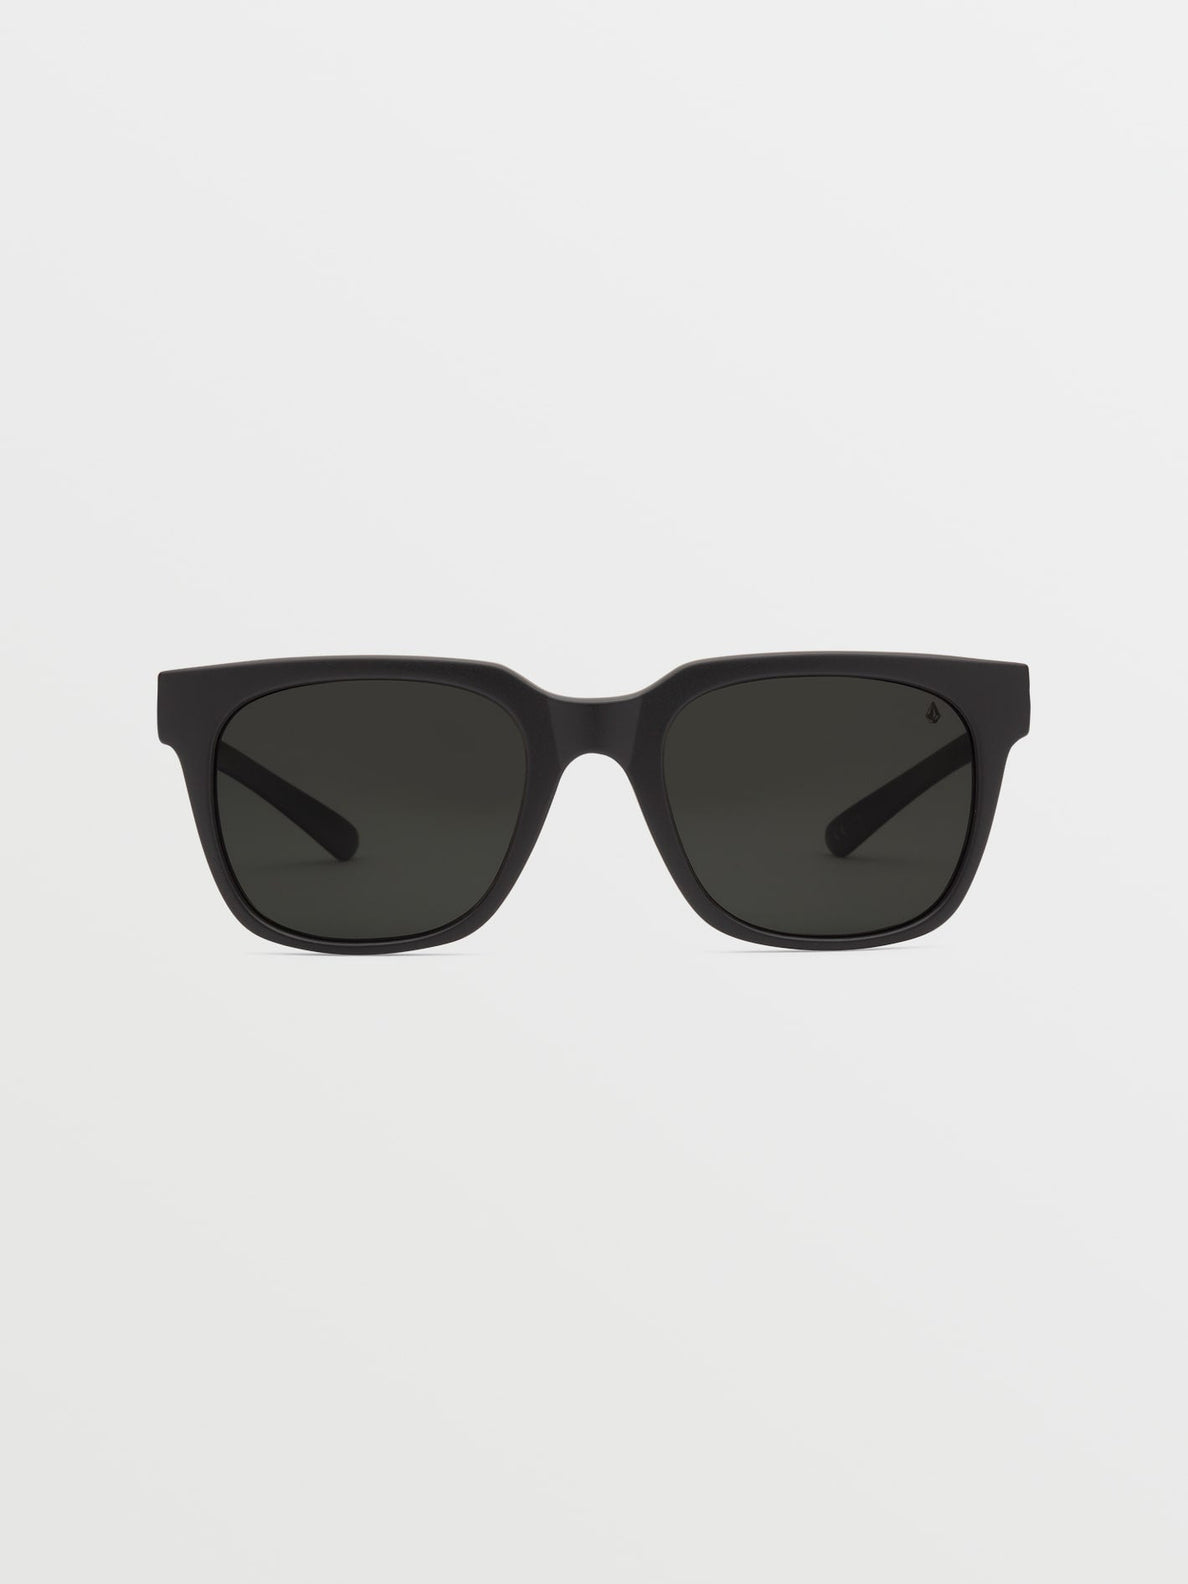 Morph Matte Black Sunglasses (Gray Polar Lens) - BLACK (VE03000102_BLK) [F]